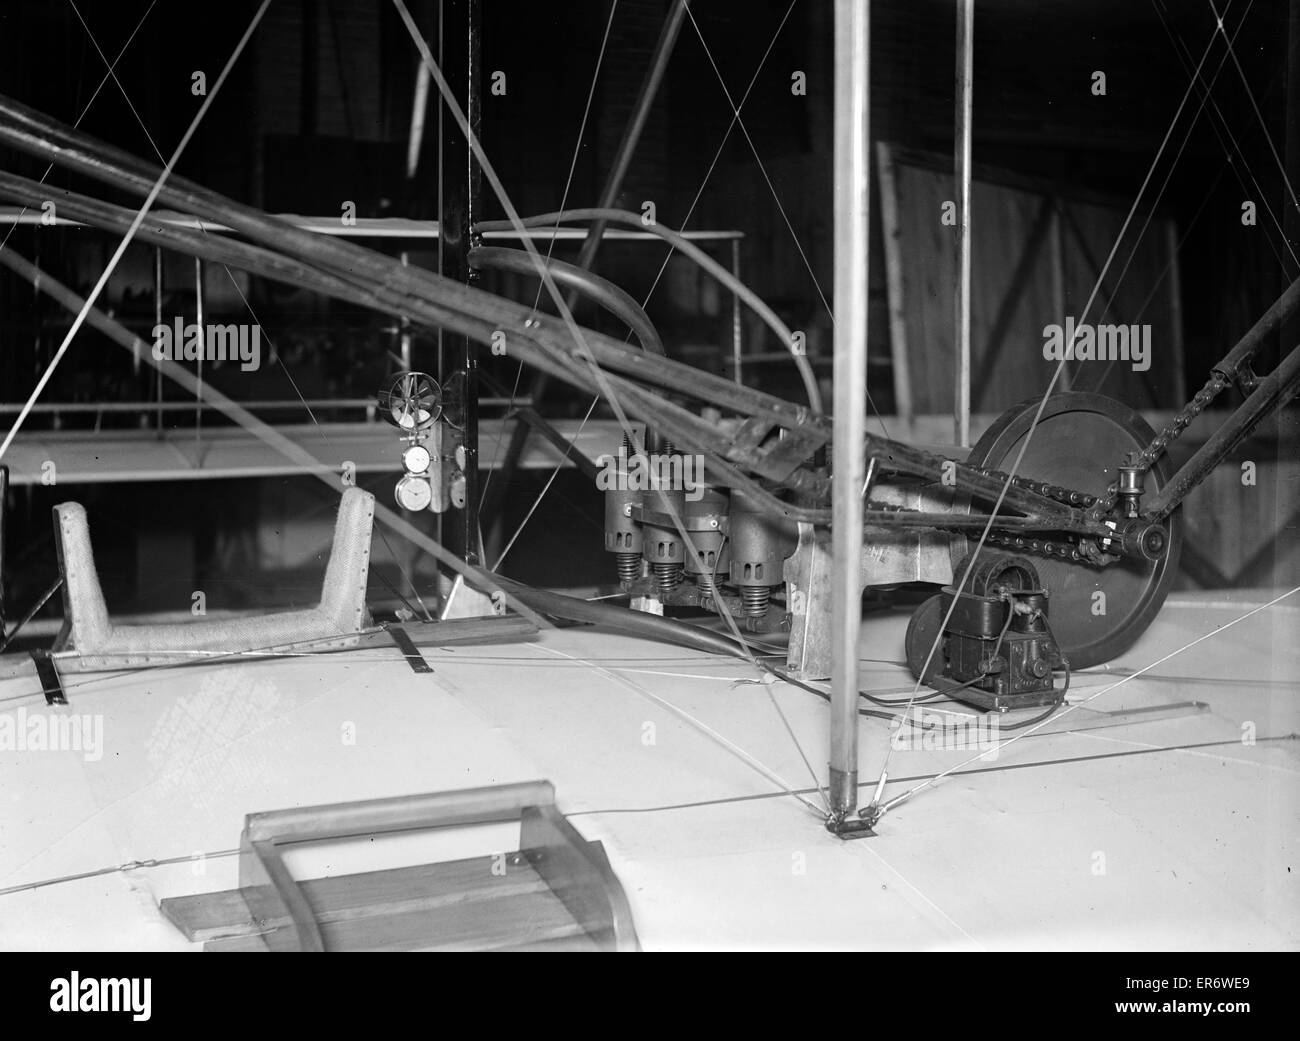 Vista posteriore del motore a quattro cilindri dei fratelli Wright come INS Foto Stock